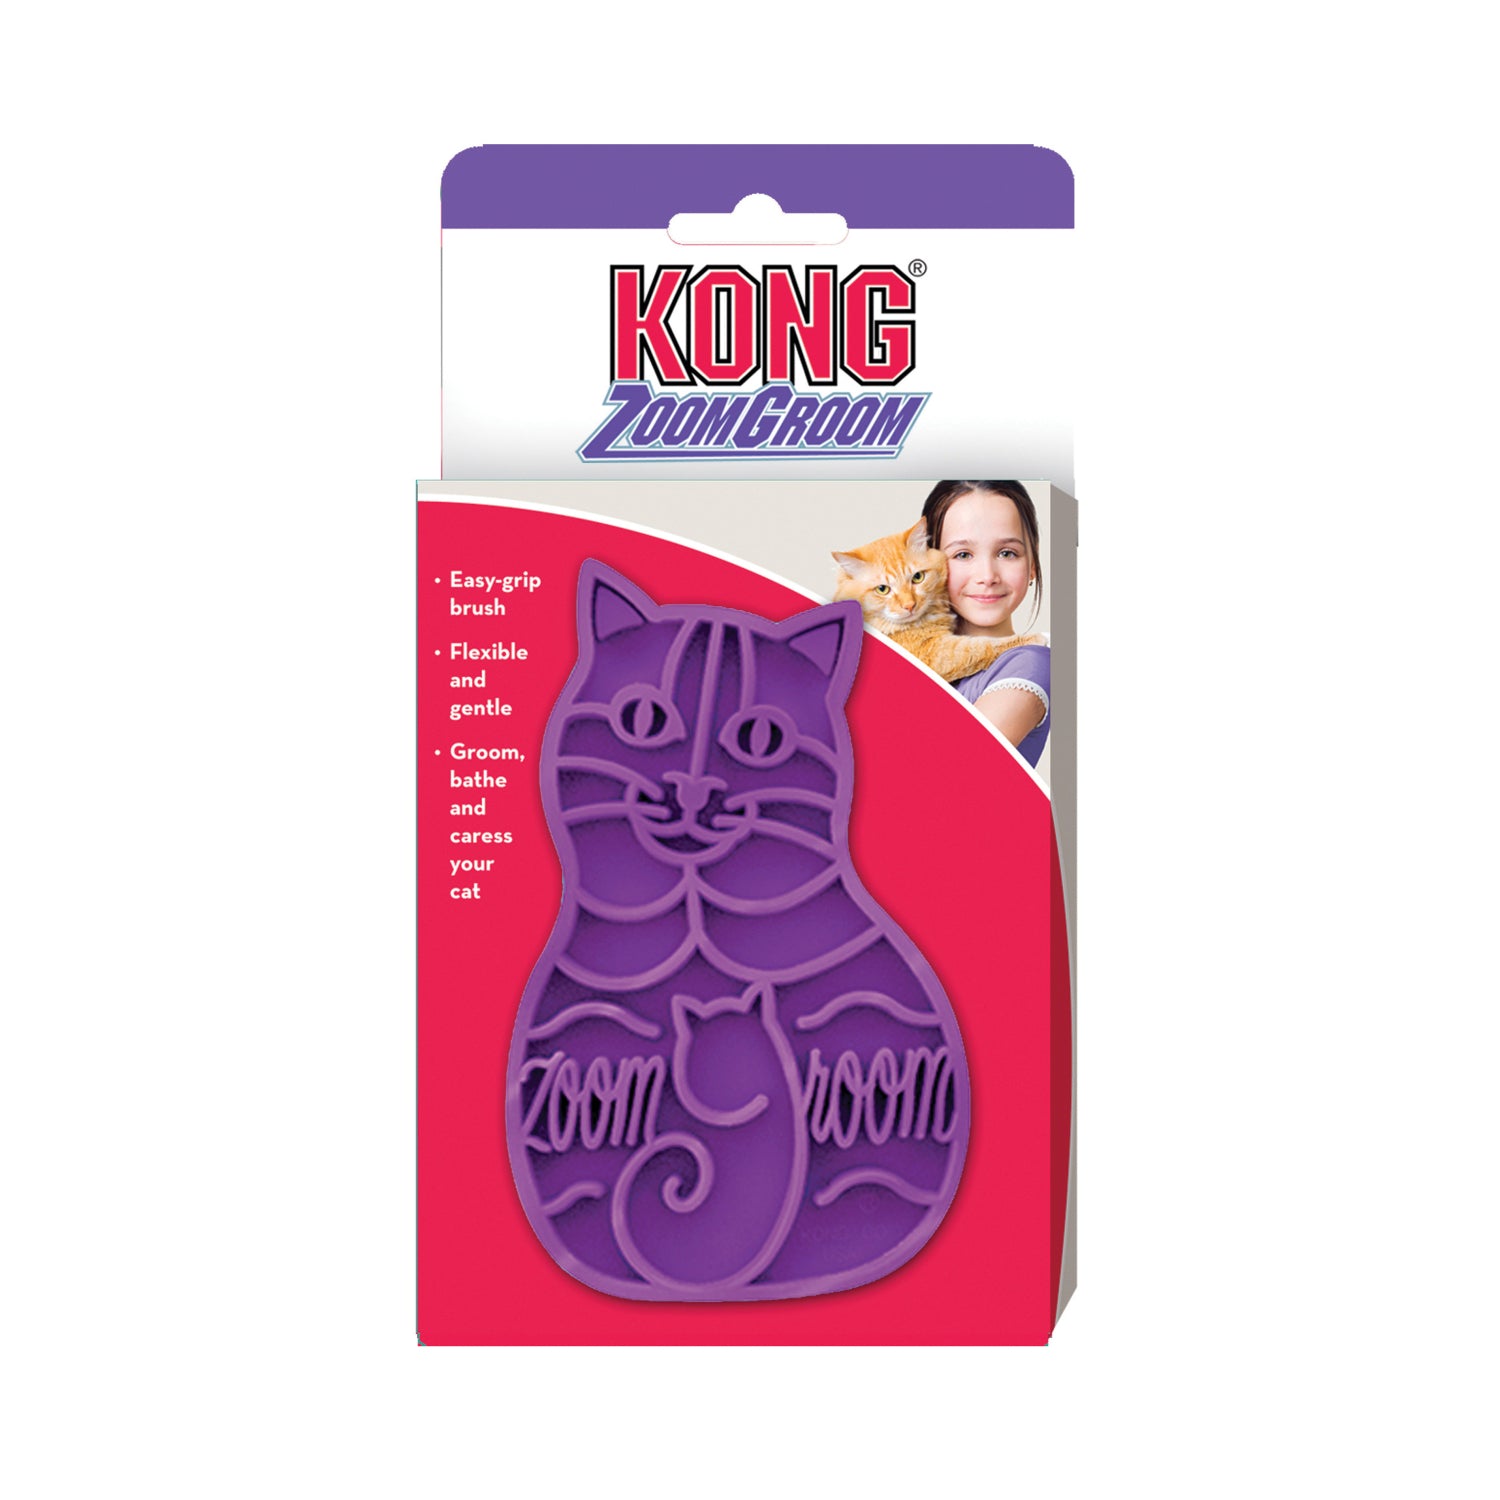 KONG Zoom Groom Cat Purple - RSPCA VIC